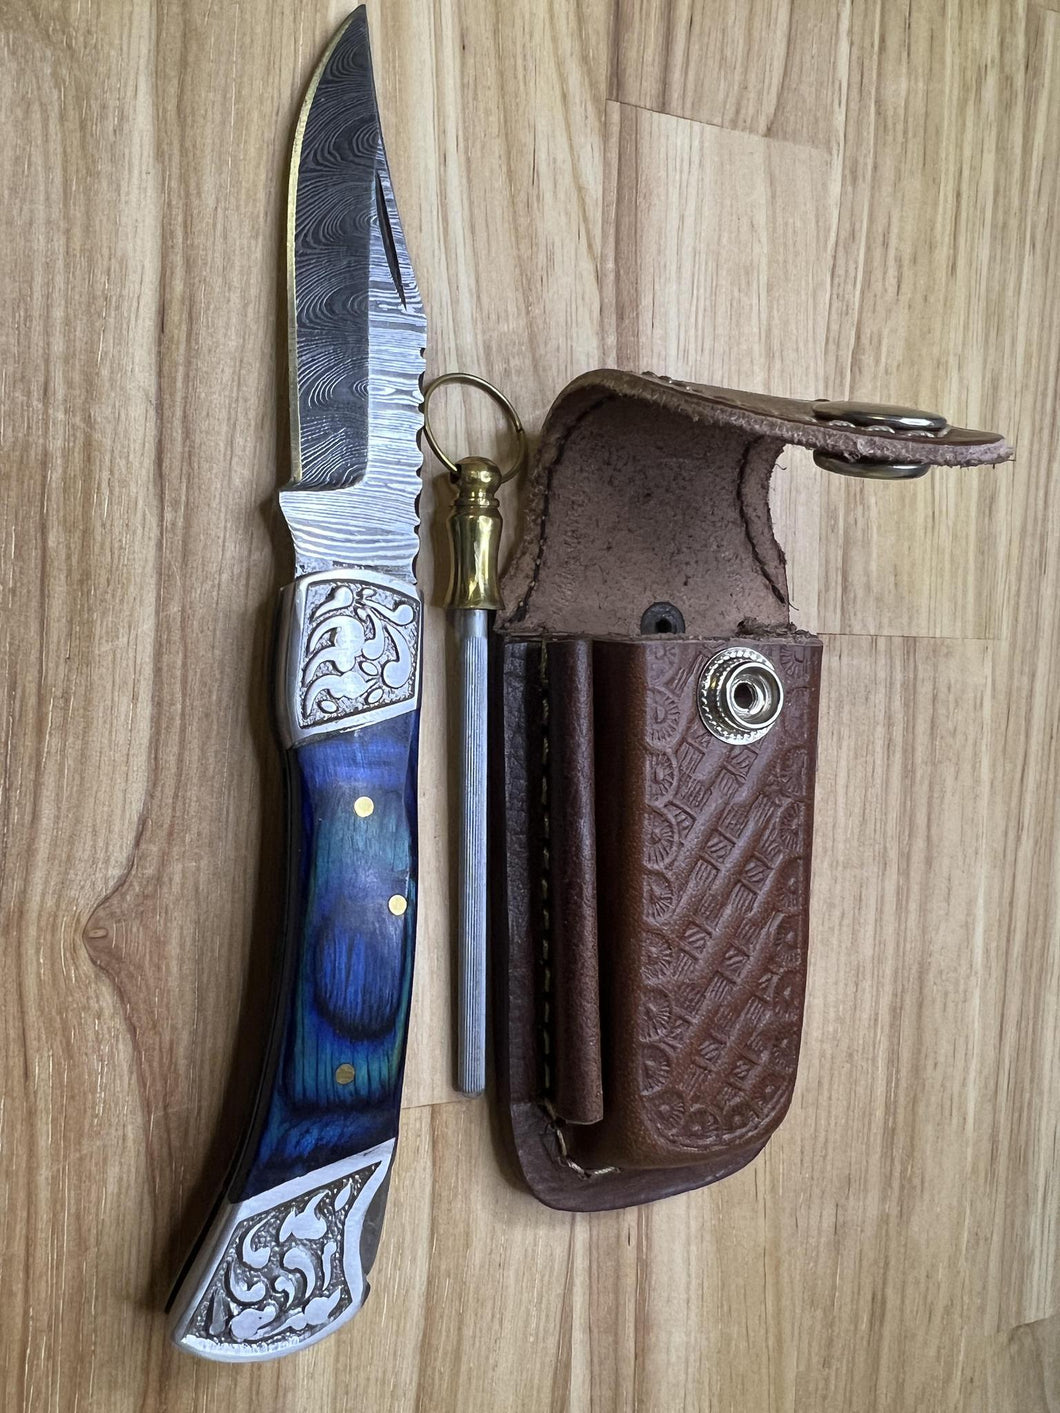 Damascus Pocket Knife with Blue wood Handle & Honing Rod